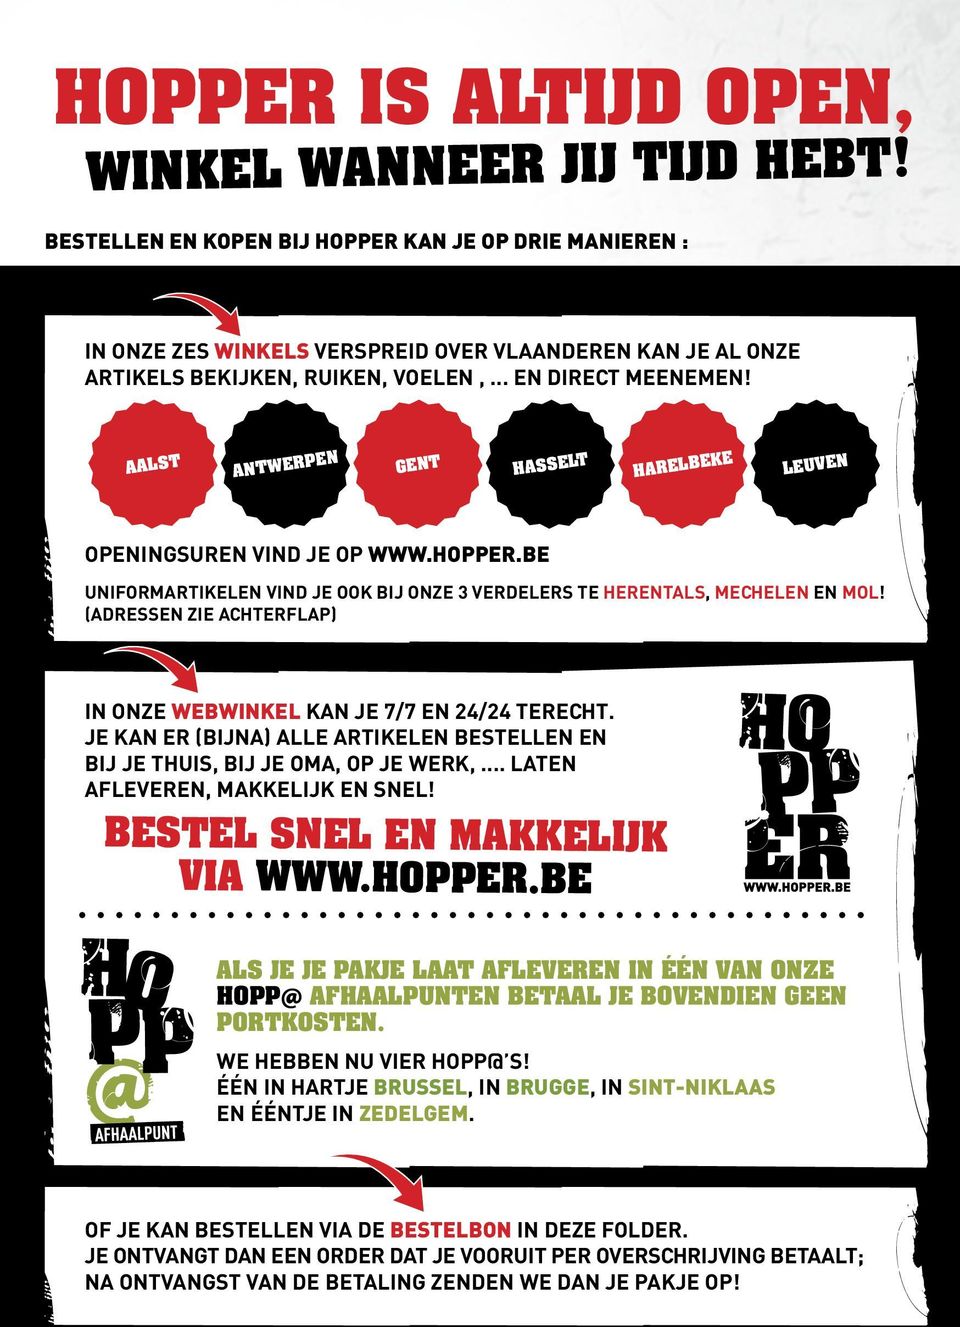 AALST ANTWERPEN GENT HASSELT HARELBEKE LEUVEN openingsuren vind je op www.hopper.be Uniformartikelen vind je ook bij onze 3 verdelers te Herentals, Mechelen en Mol!